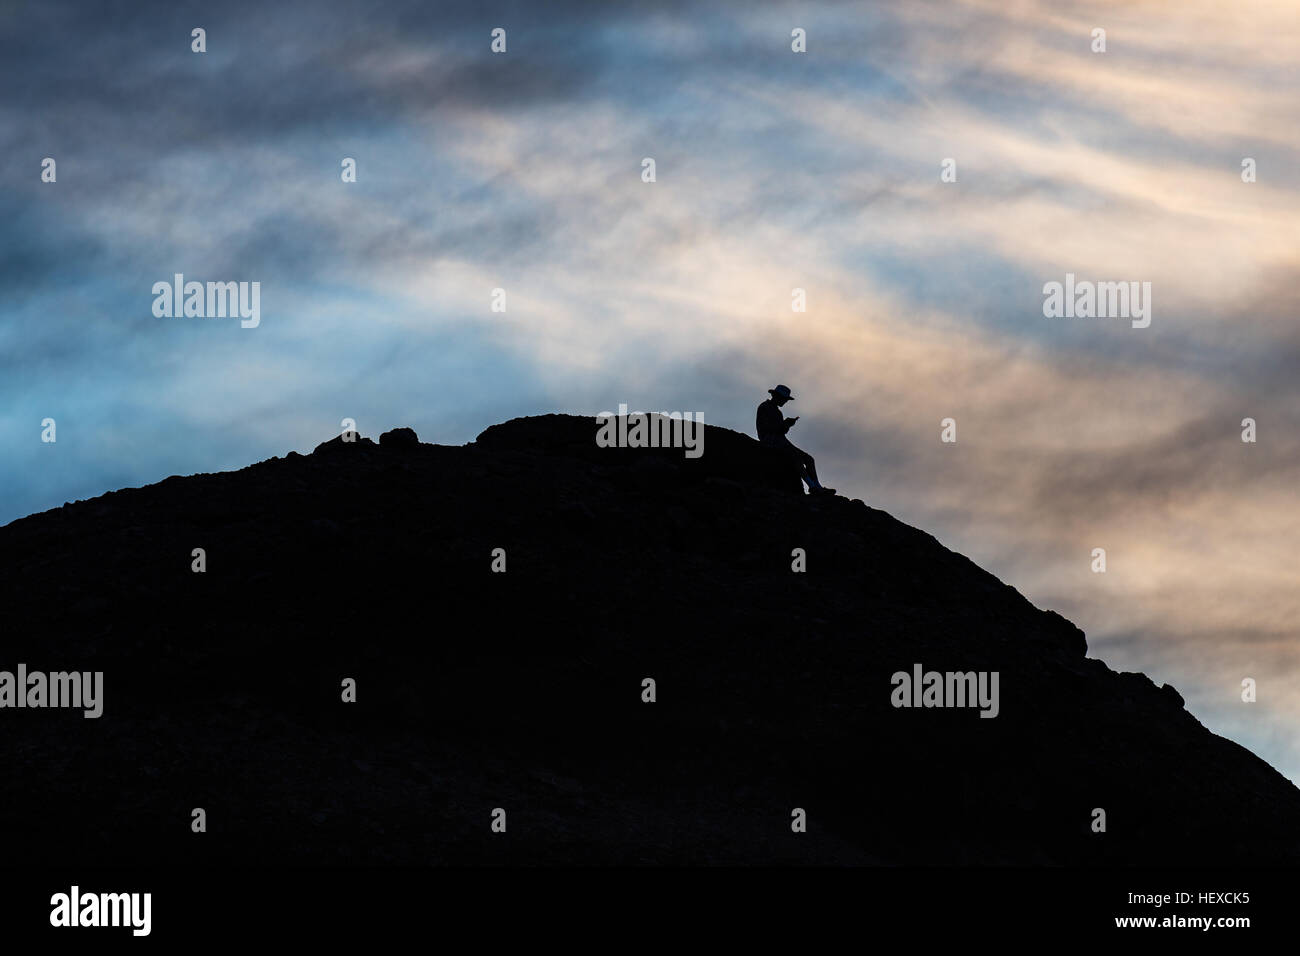 Silhouette d'un homme sur une montagne à l'aide d'un téléphone cellulaire Banque D'Images